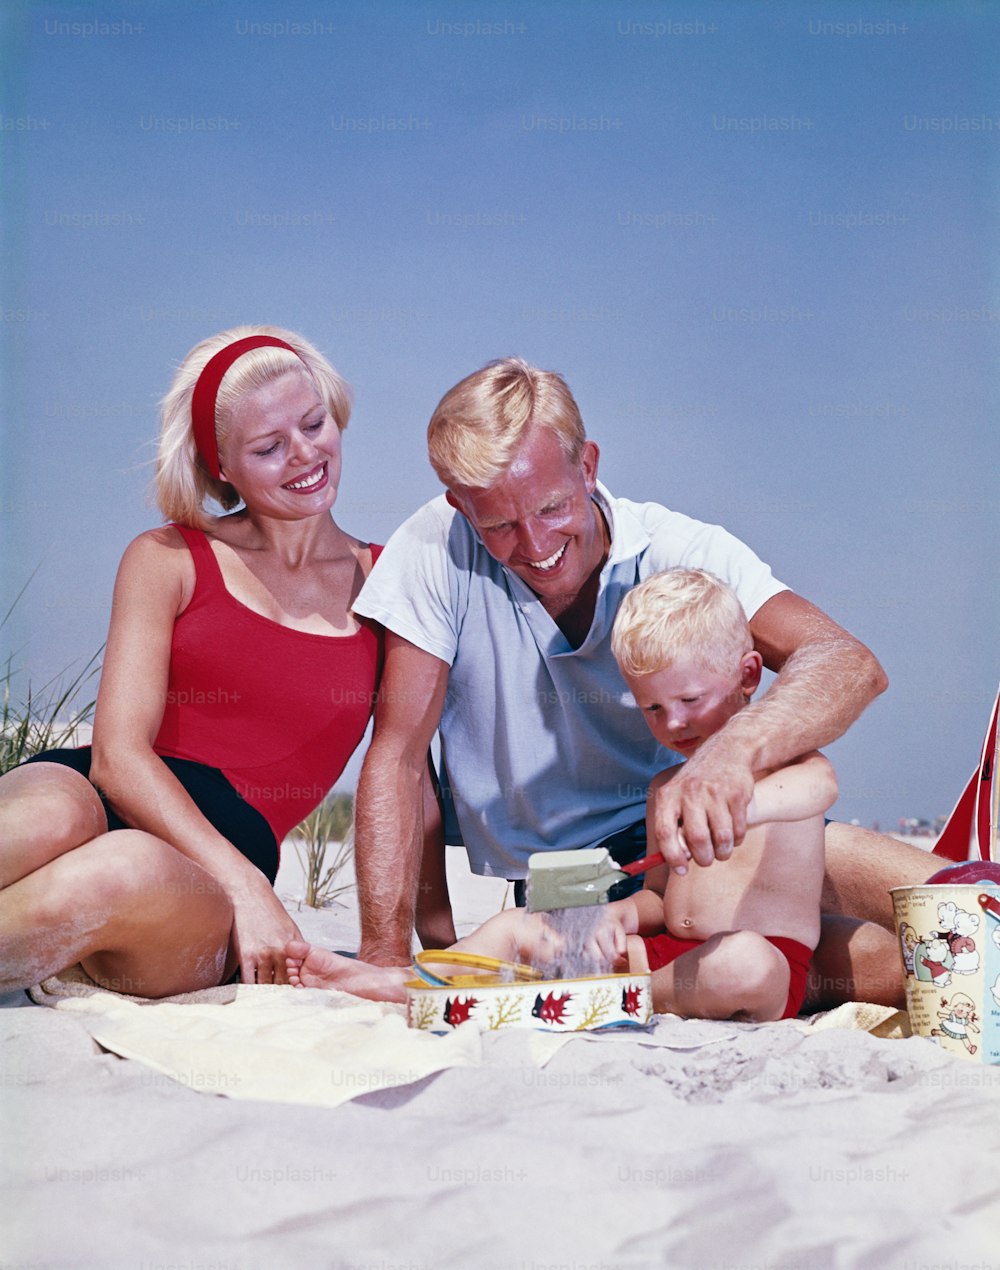 ESTADOS UNIDOS - CIRCA 1960s: Familia en la playa, niño jugando en la arena.